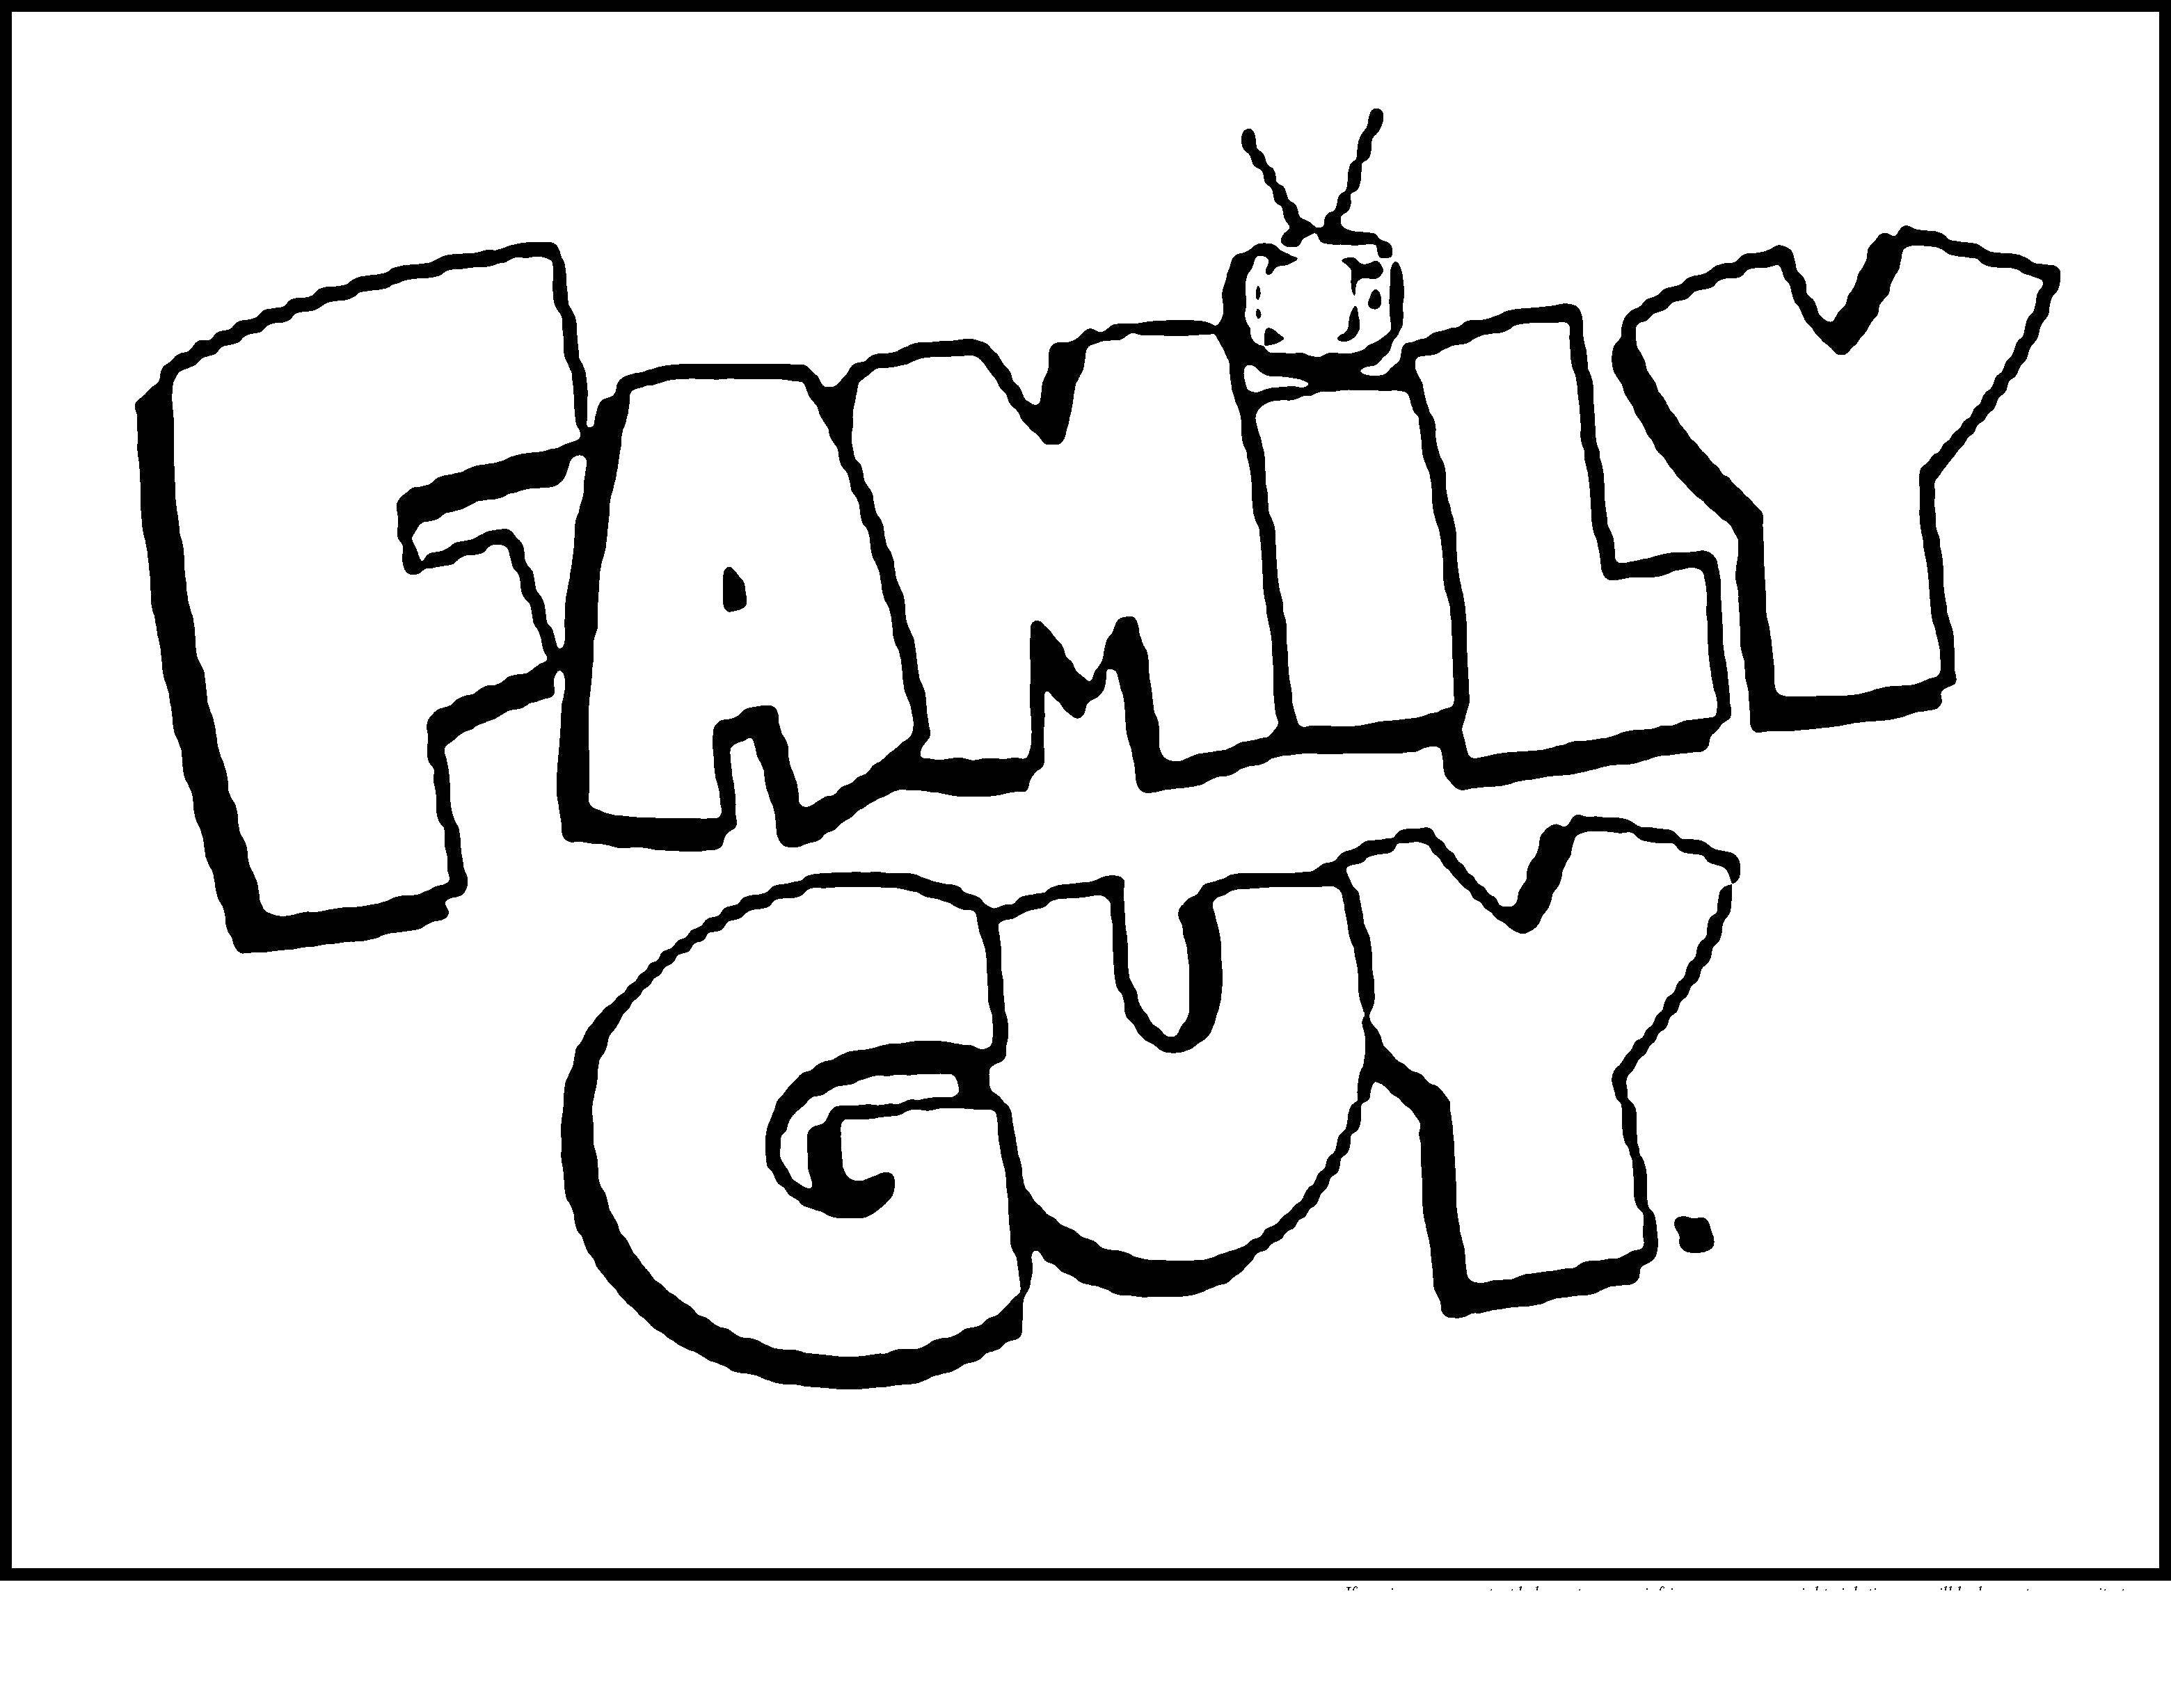 Coloring Family guy. Category cartoons. Tags:  Family guy cartoon.